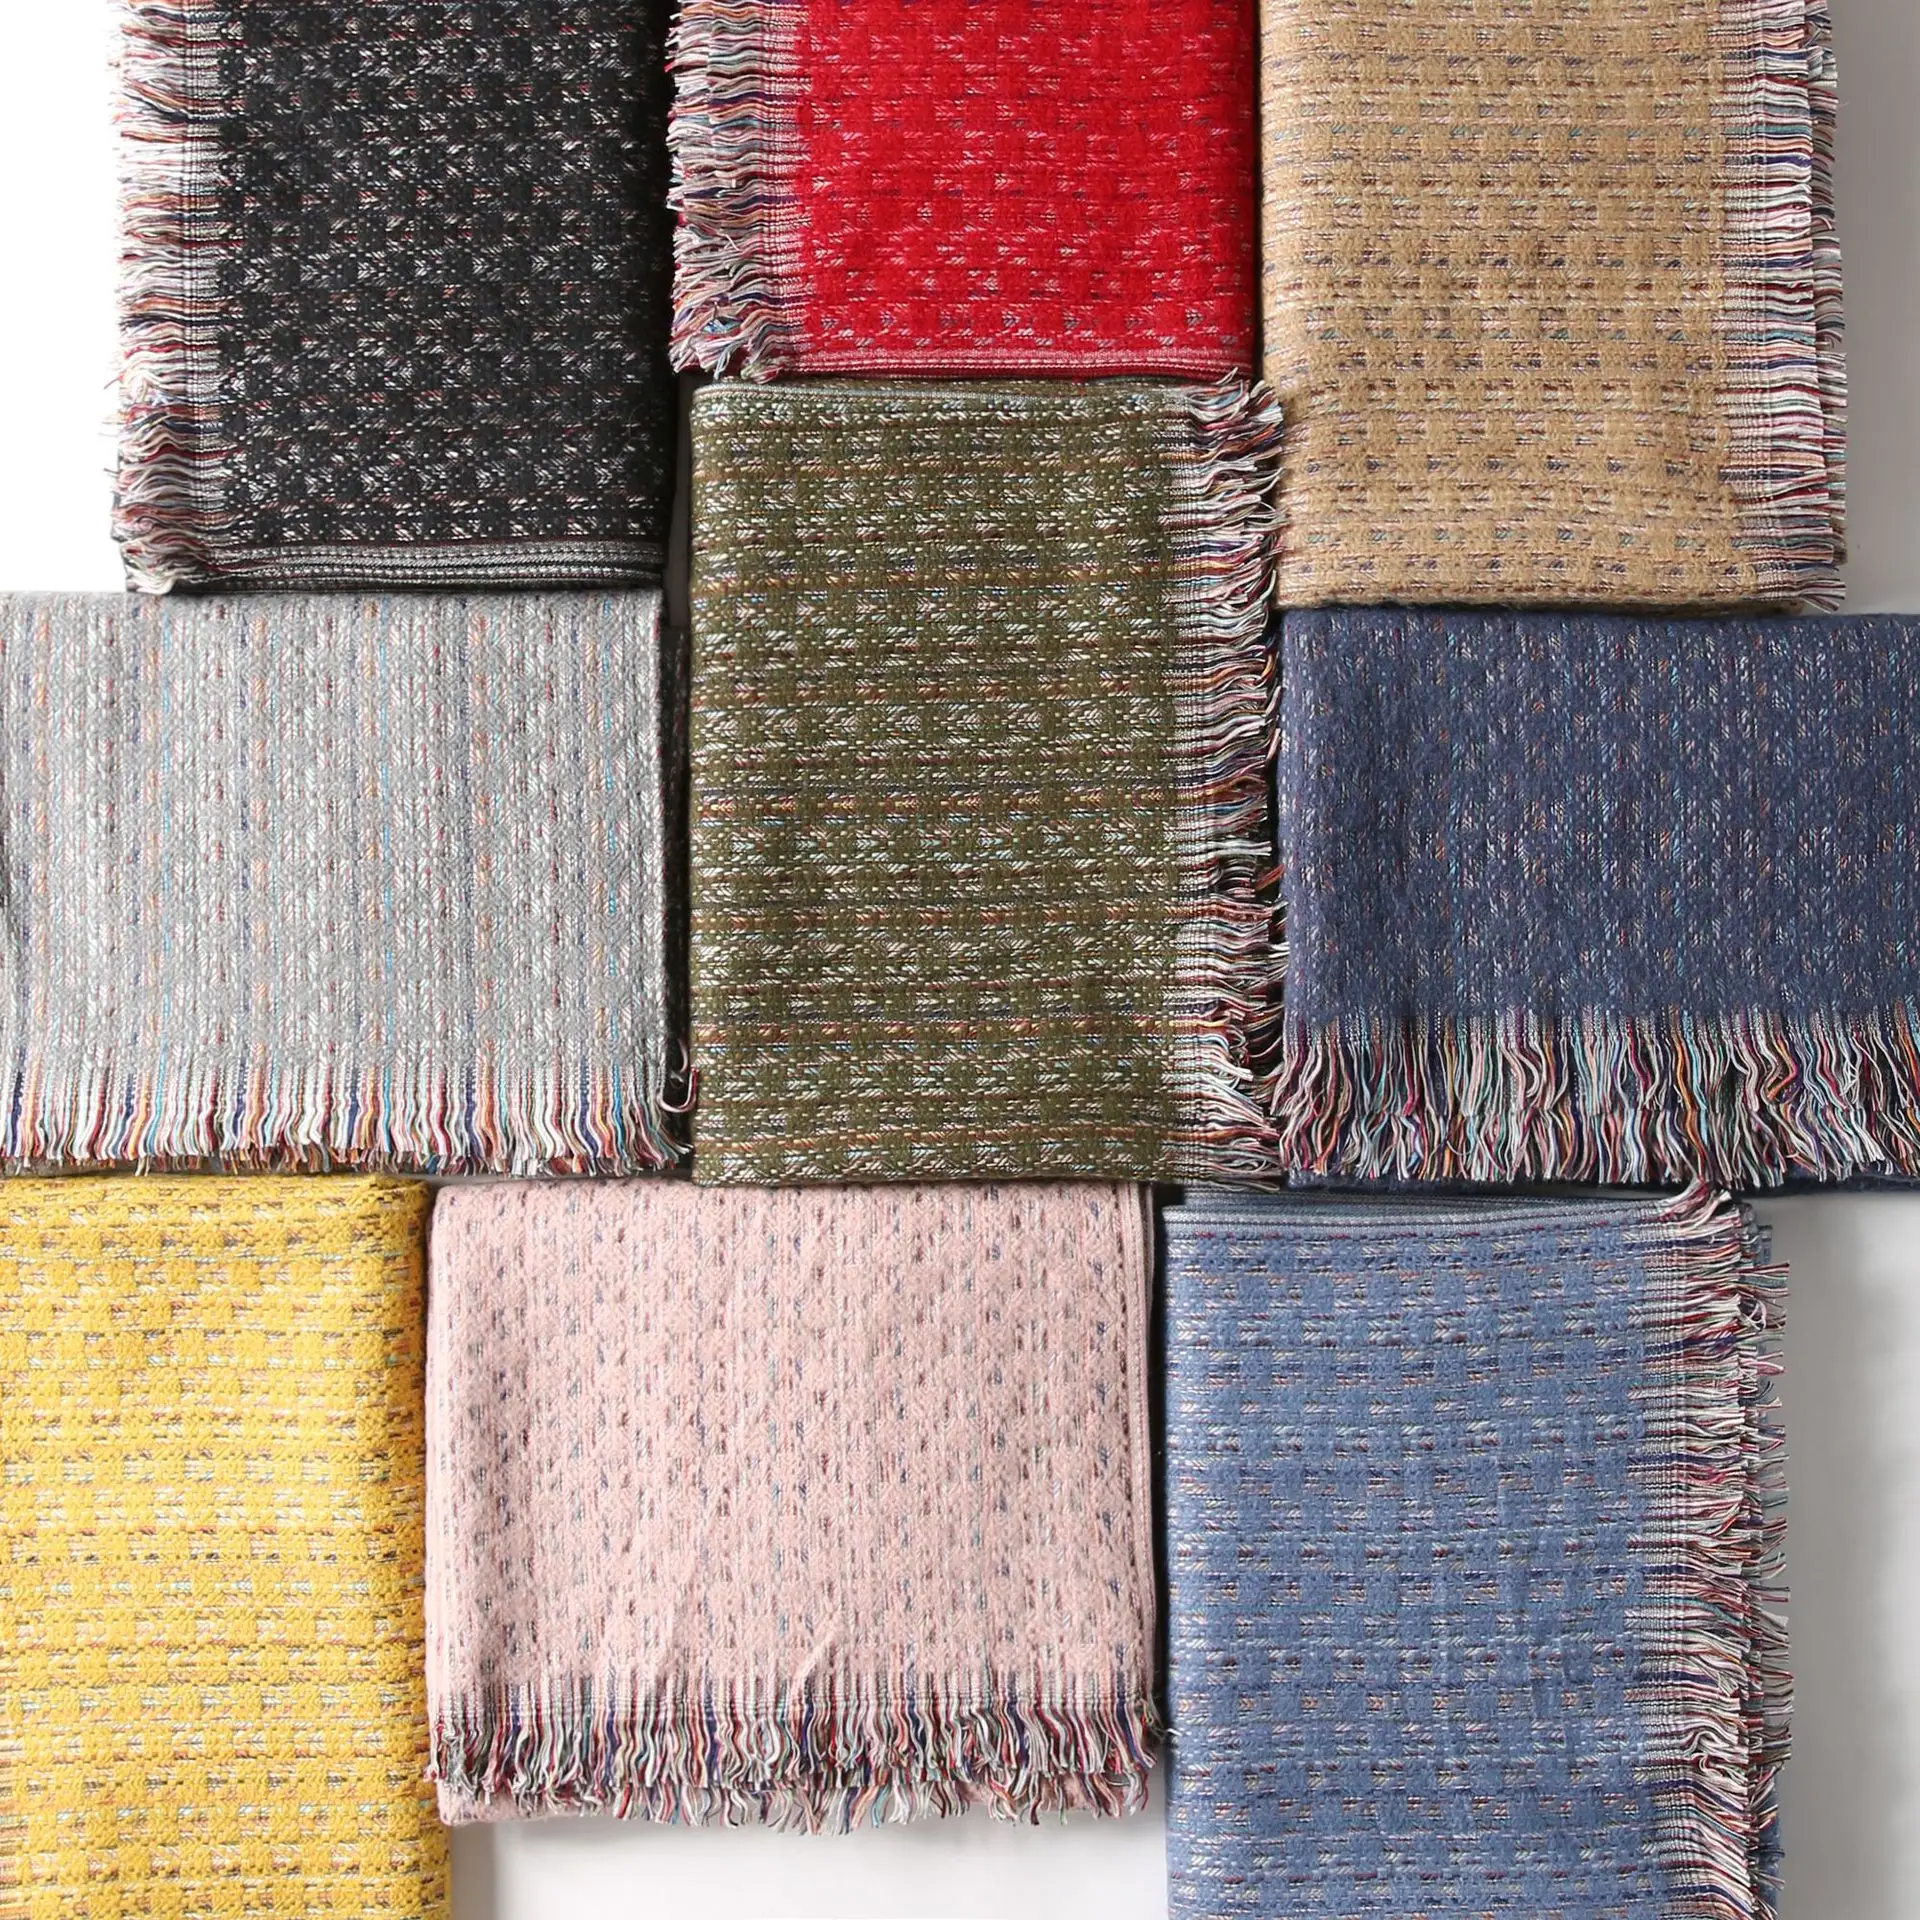 2018 осень зима унисекс для мужчин Cashere шарф платки шарфы для женщин модные дизайн шарфы повседневное Роскошные для мужчин шахматы